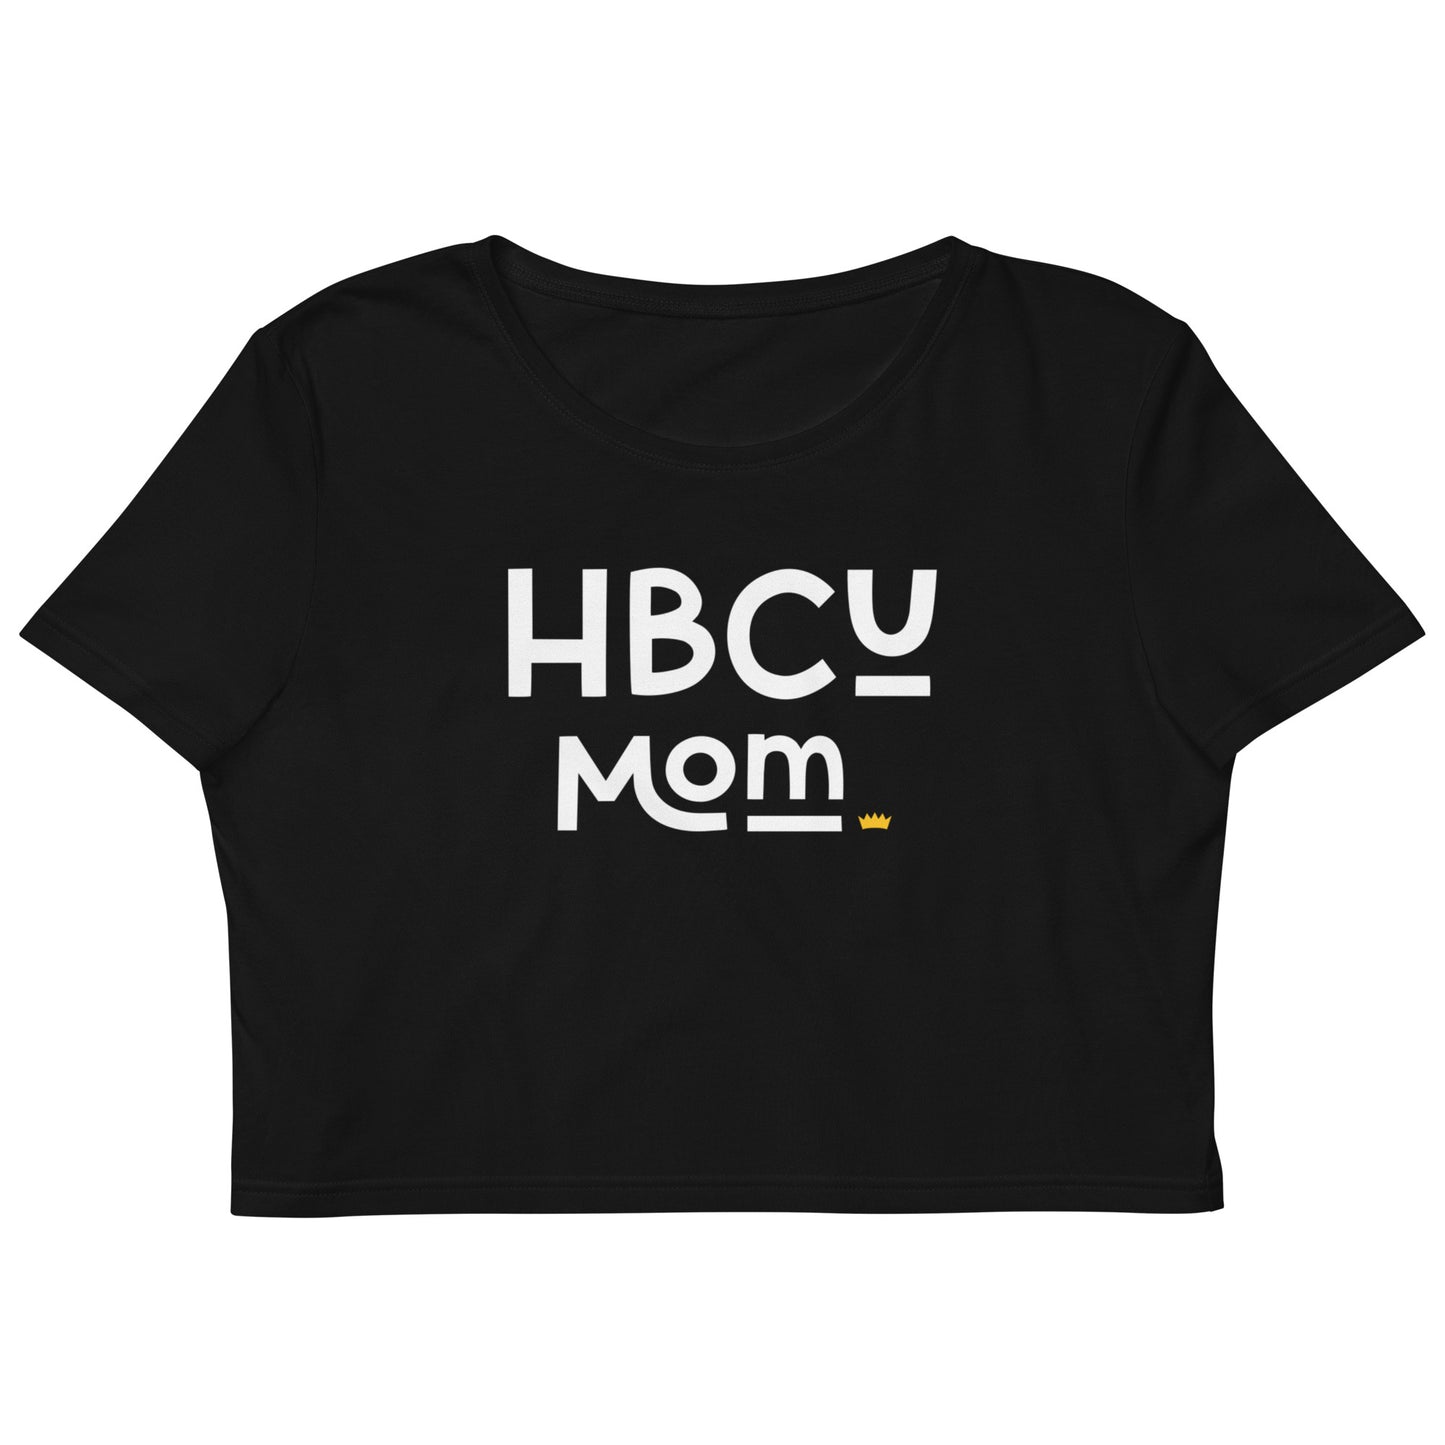 Mom - HBCU Organic Crop Top